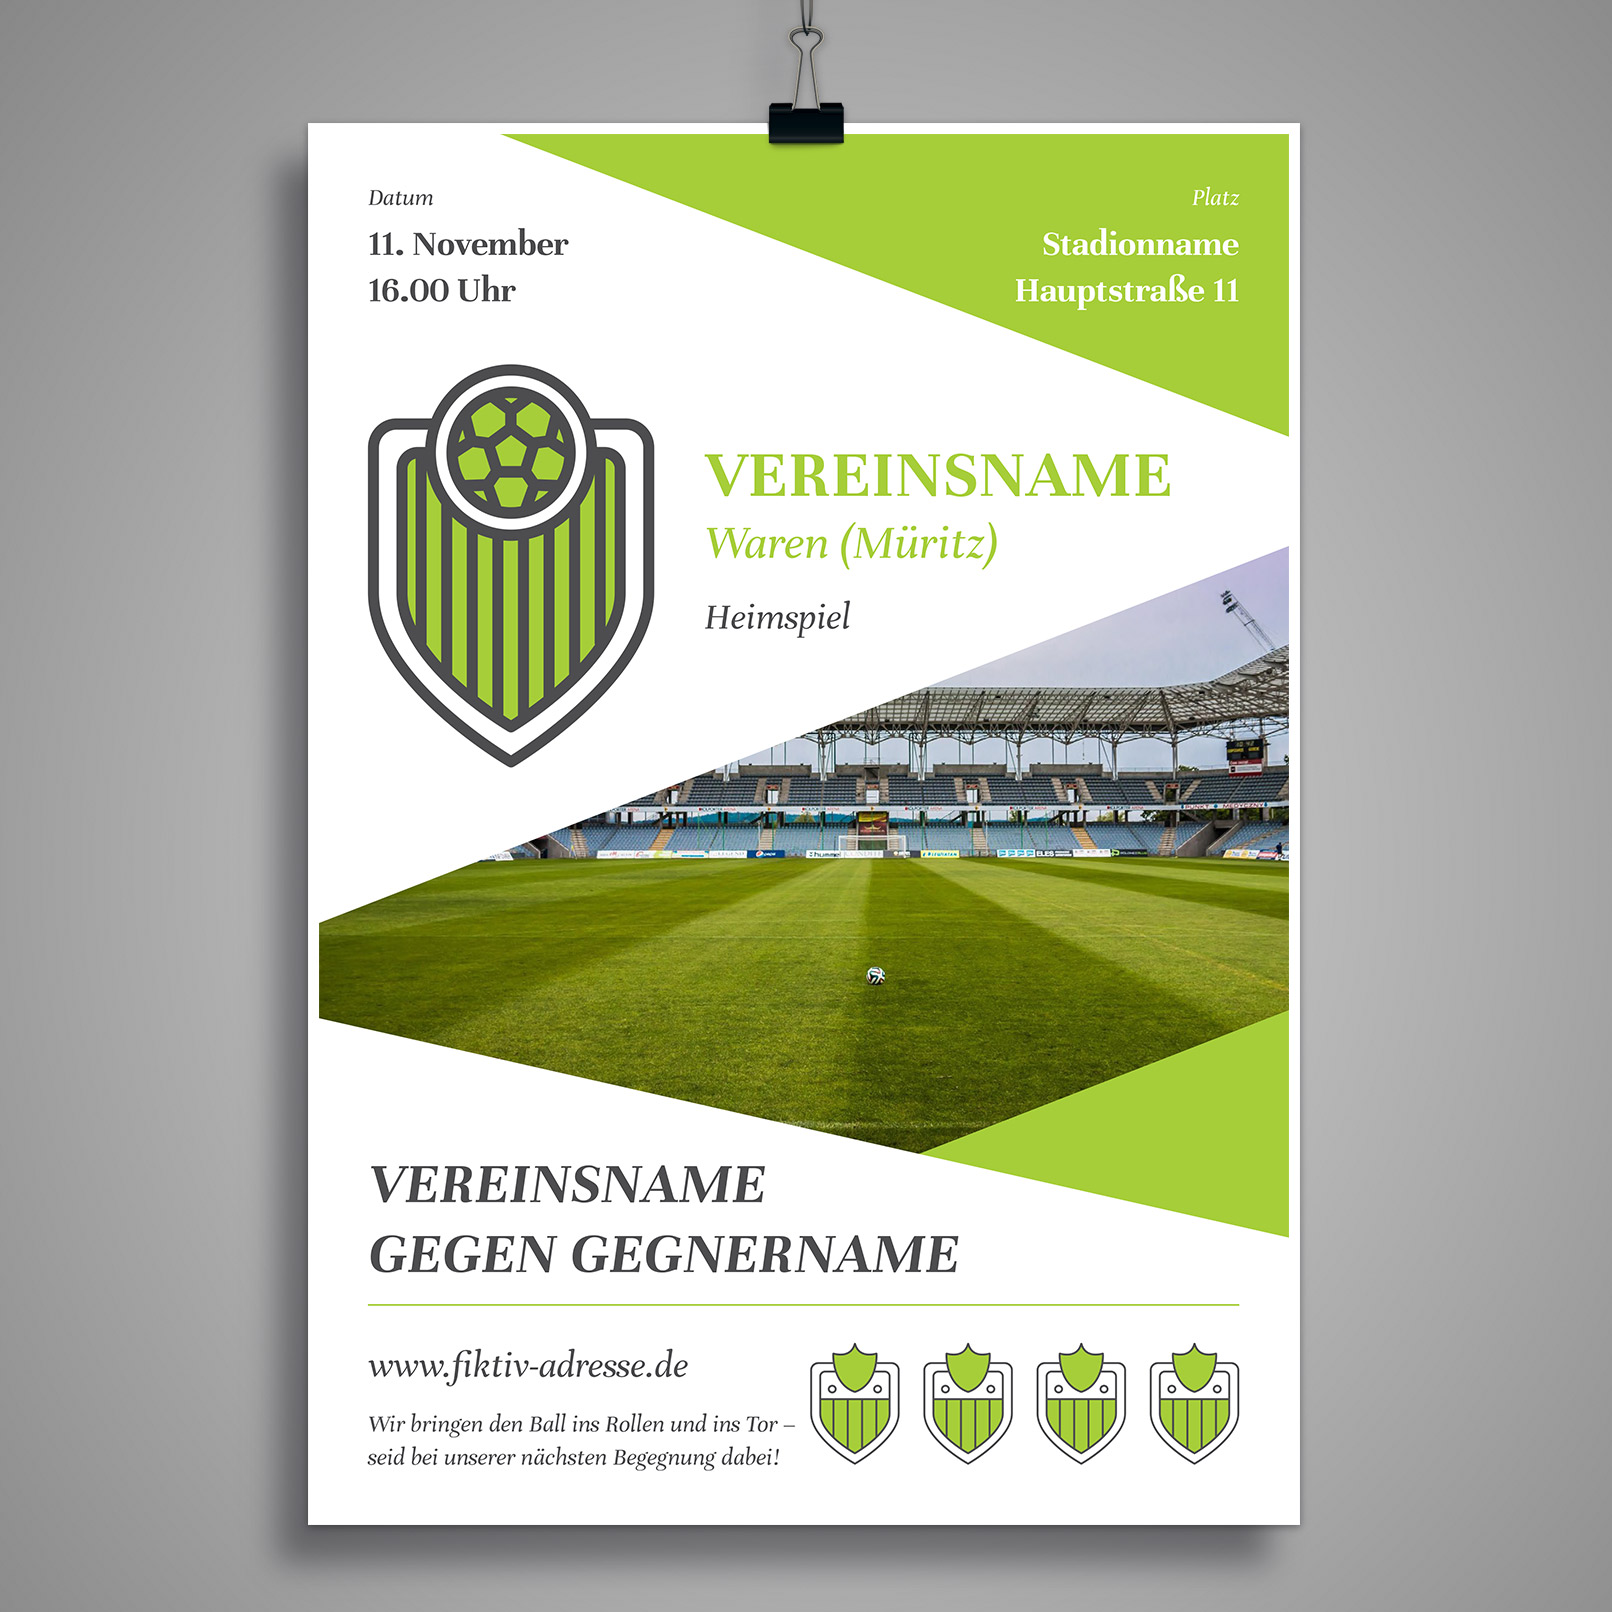 Flyer erstellen mit Word, InDesign oder CorelDRAW, auch anwendbar für Fußball Poster oder andere Sportarten.